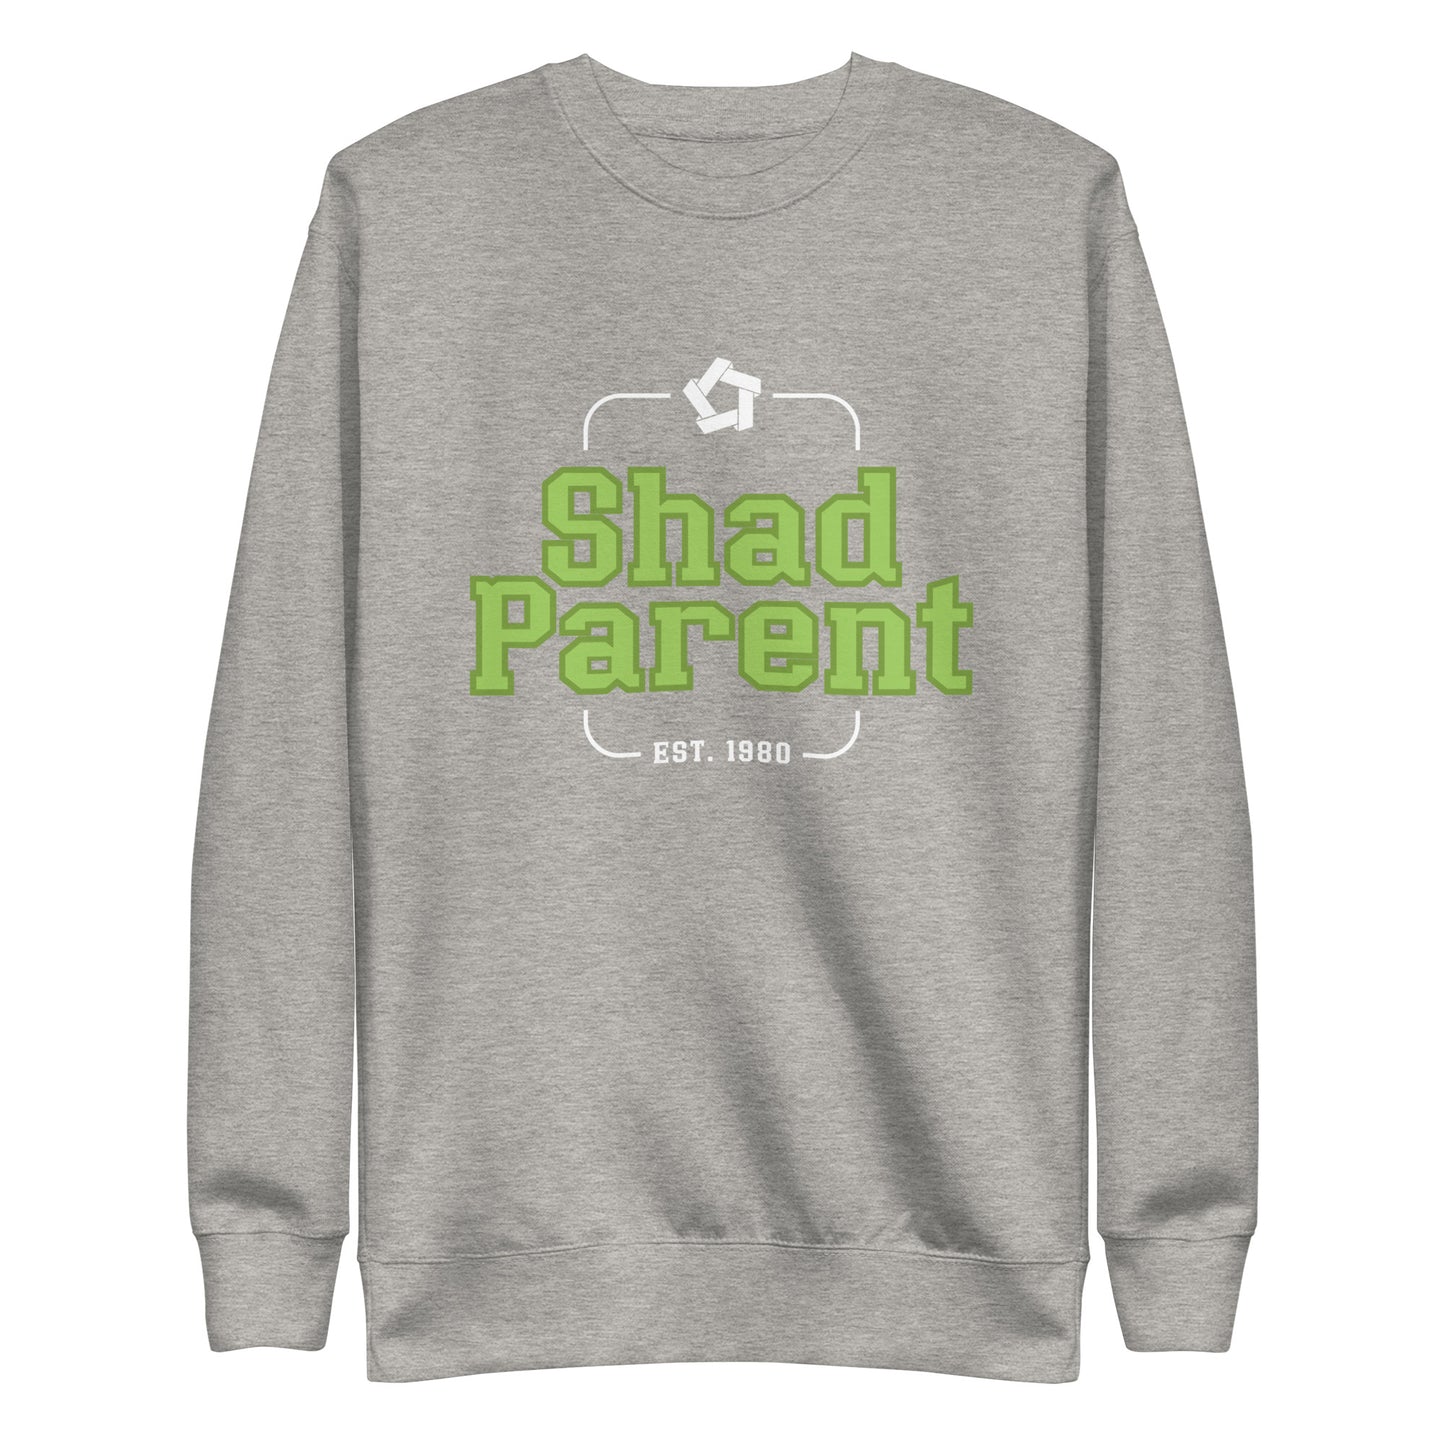 Unisex Premium  Shad Parent Sweatshirt